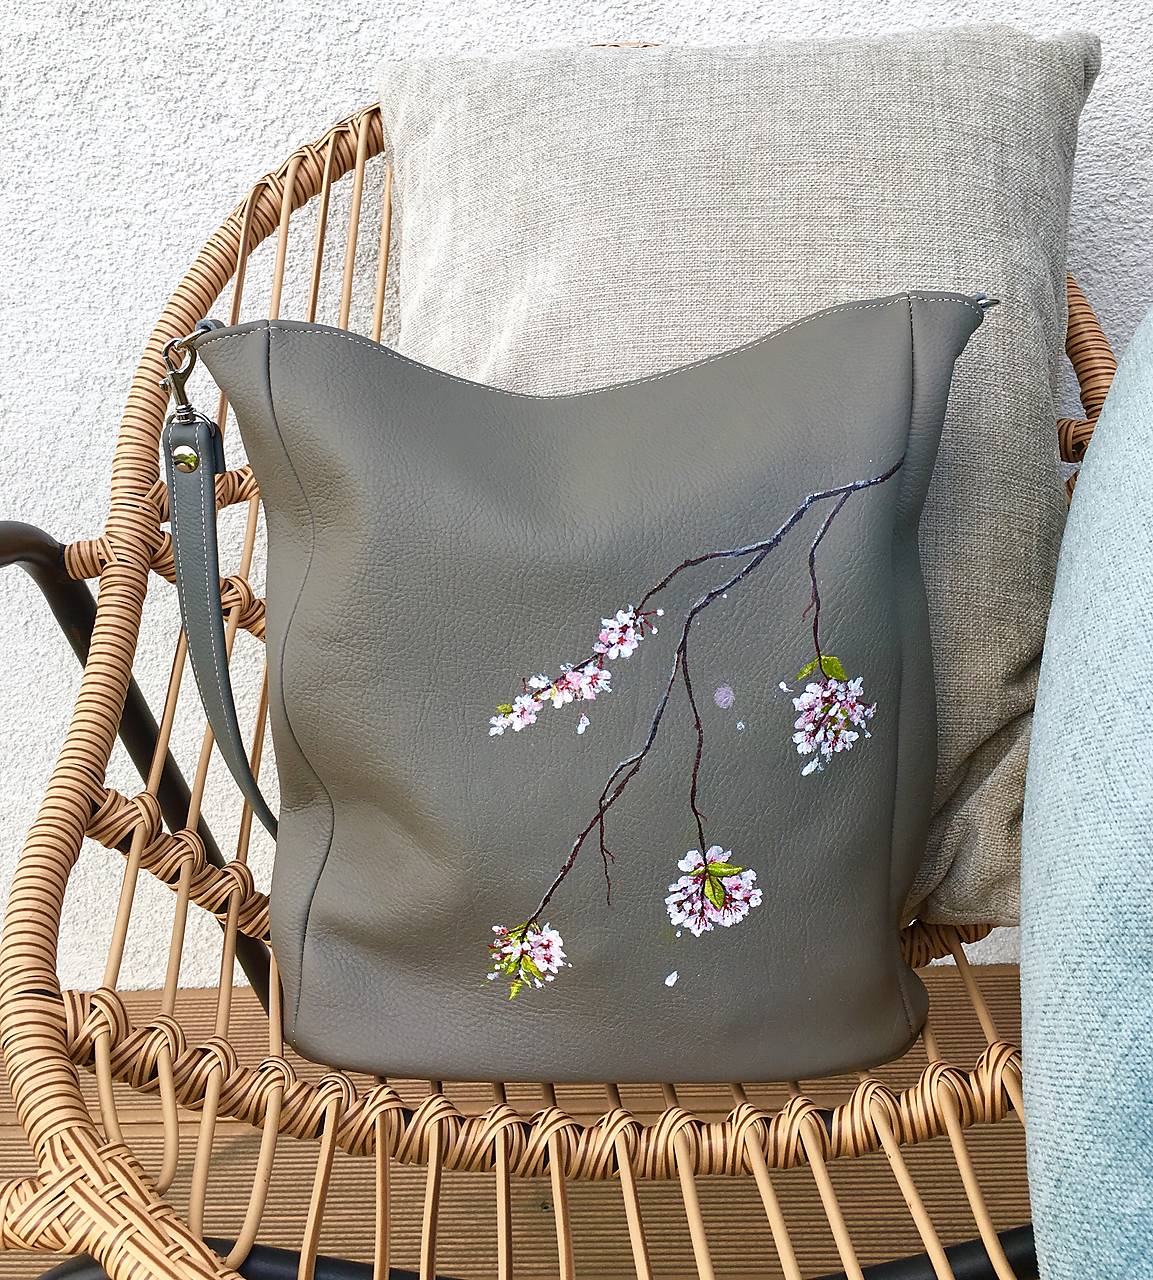 EVA "Flower Branch" kožená kabelka s maľbou